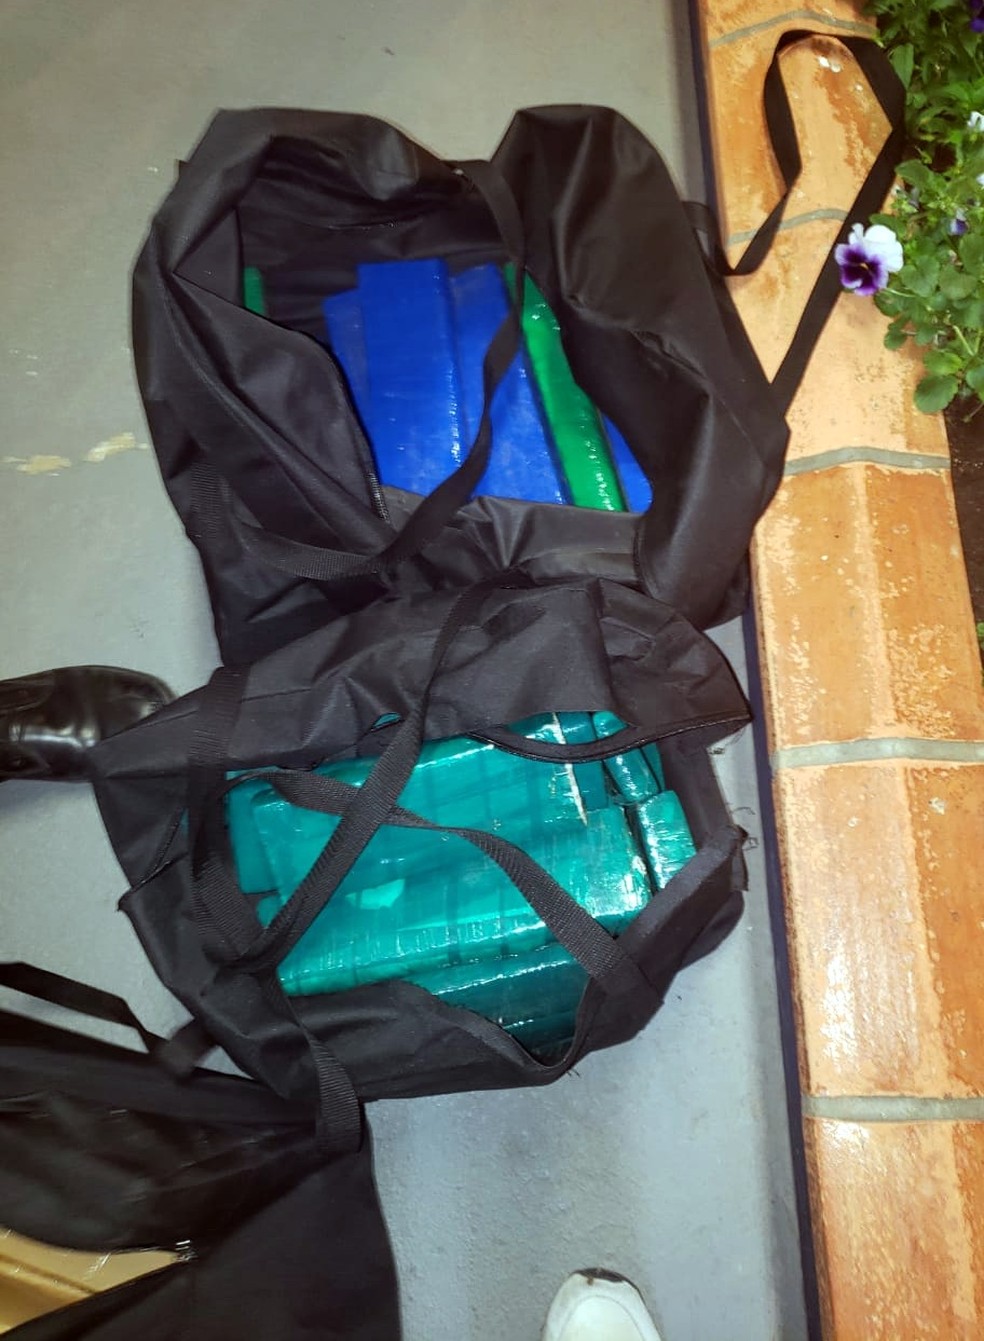 Tabletes estavam em malas dentro de carro apreendido na BR-282, em SC — Foto: PRF/Divulgação